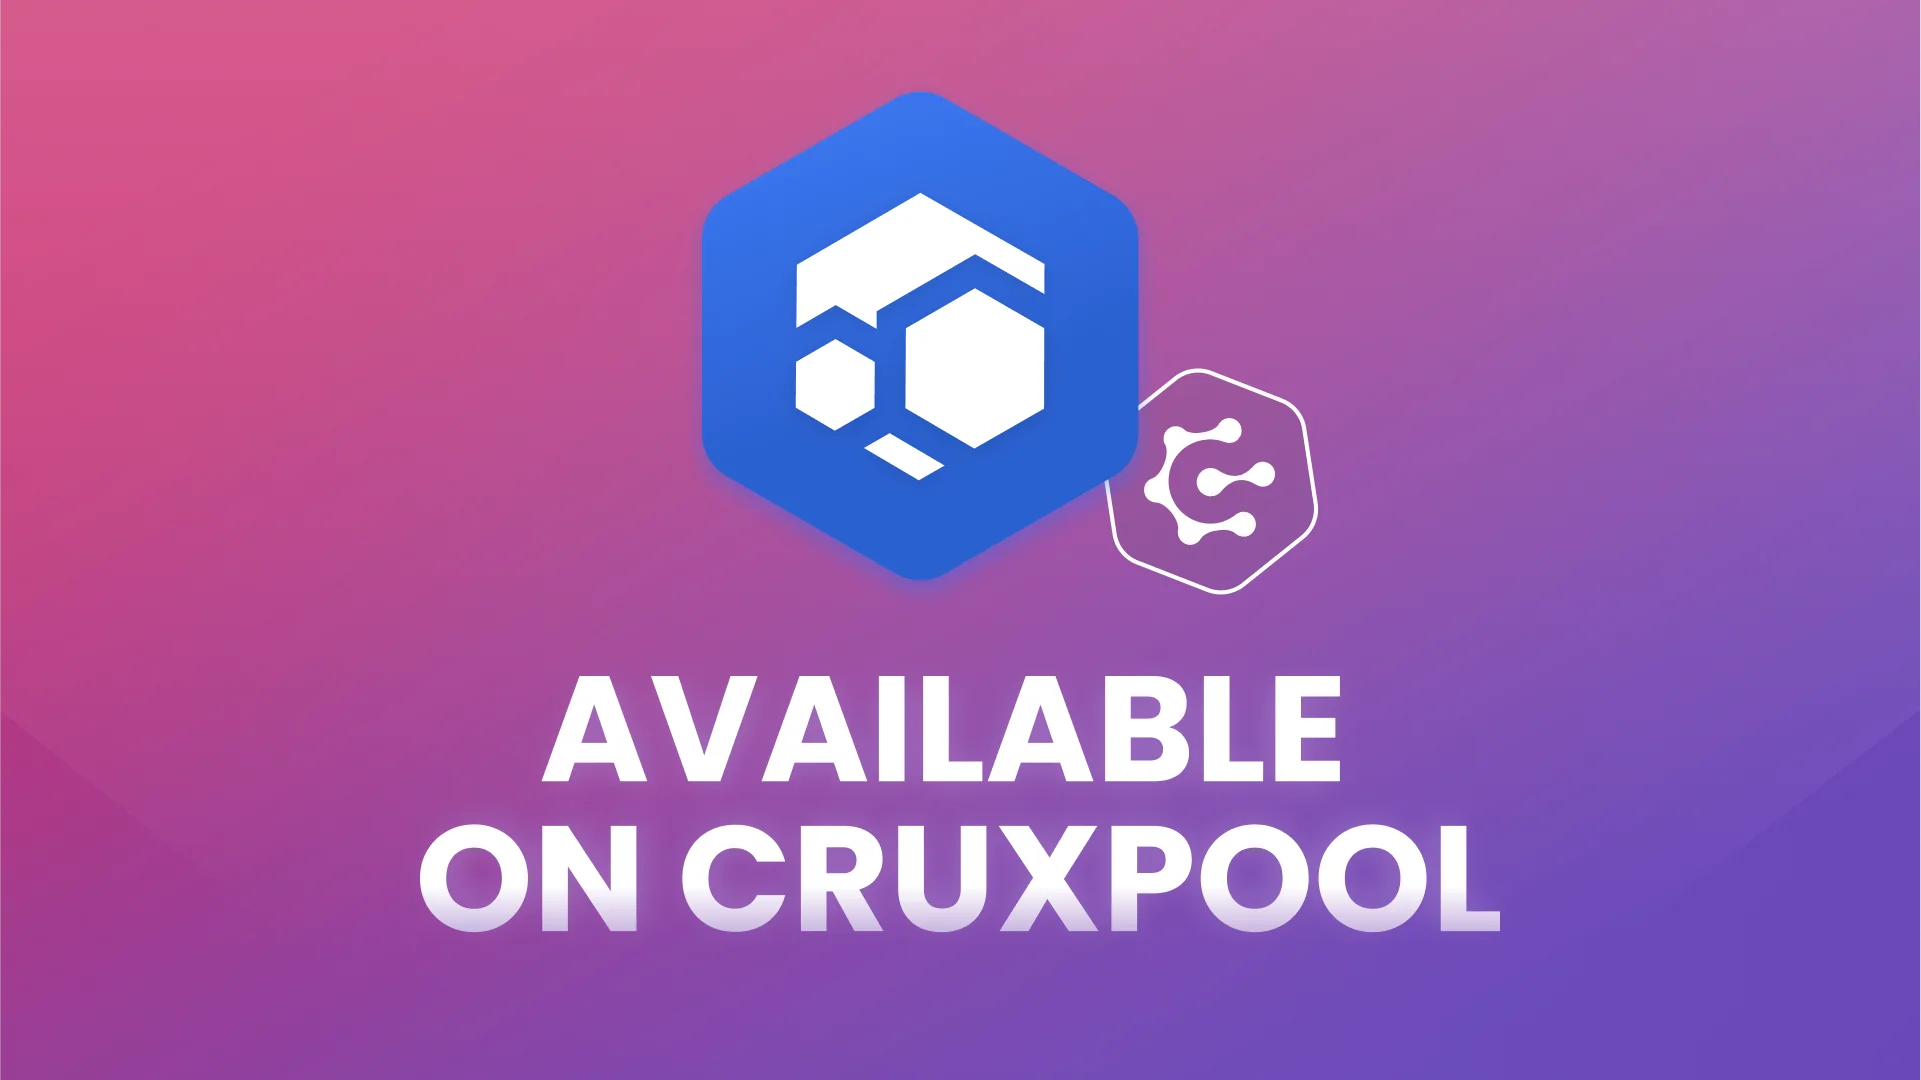 Le mining pool Flux est disponible sur Cruxpool